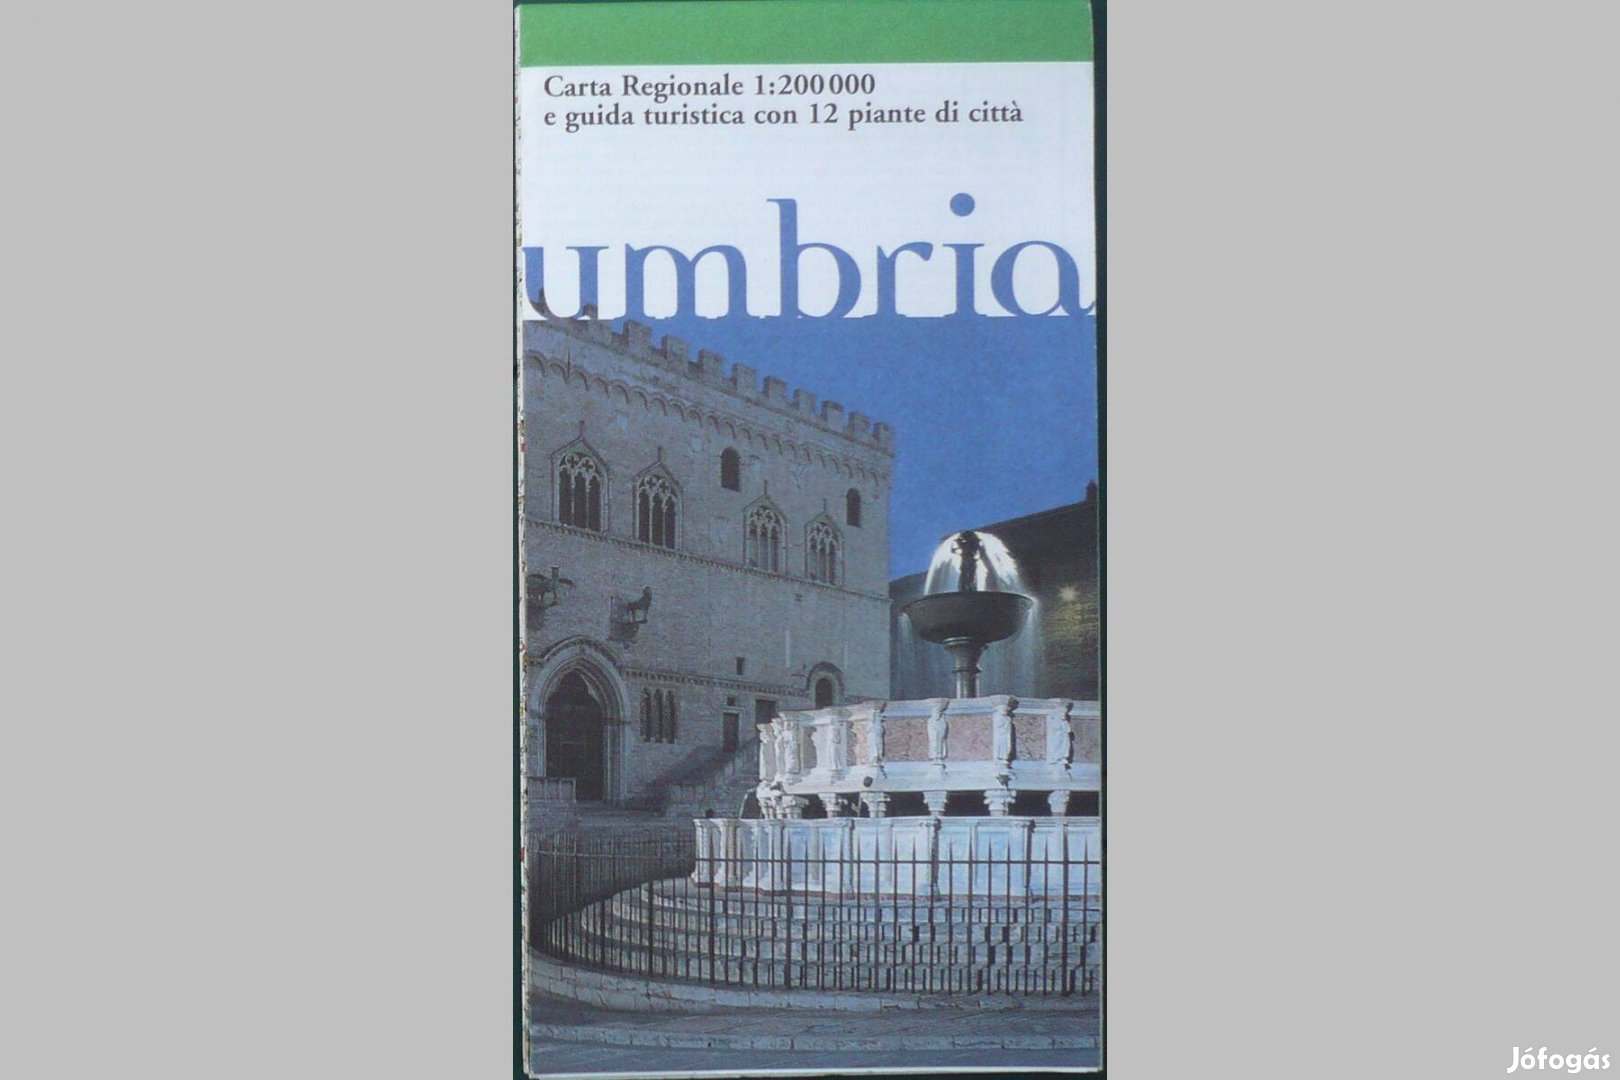 Umbria térképe város térképekkel, 1:200000